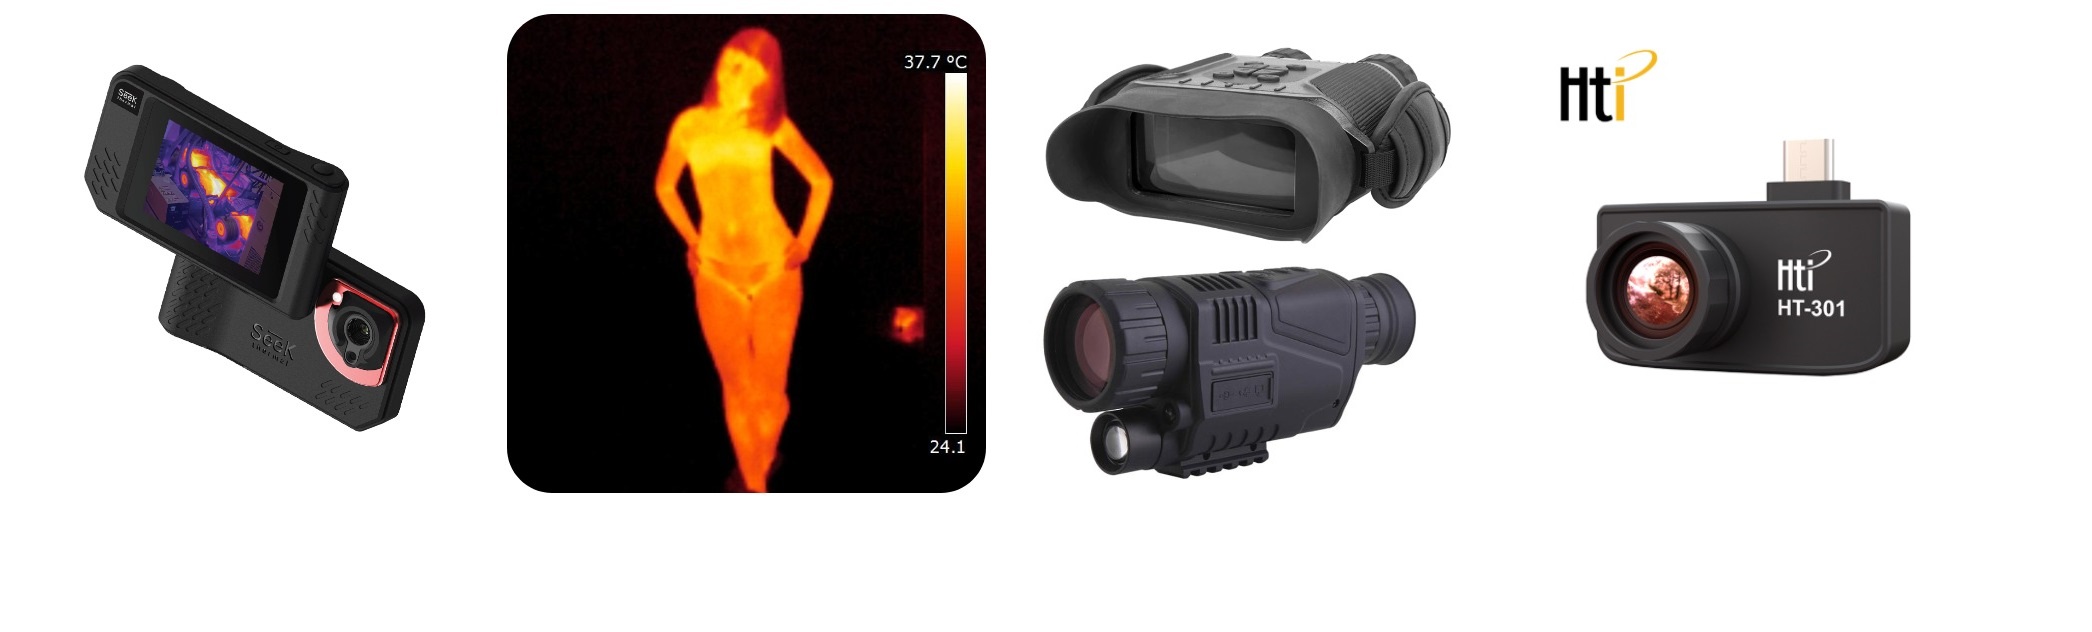 Тепловизоры гляделки для охоты. Тепловизионный прибор ночного видения. Zk1-100-6 монокулярная тепловизионная камера ночного видения. Прибор ночного видения с тепловизором. Тепловизор ночного видения для охоты.